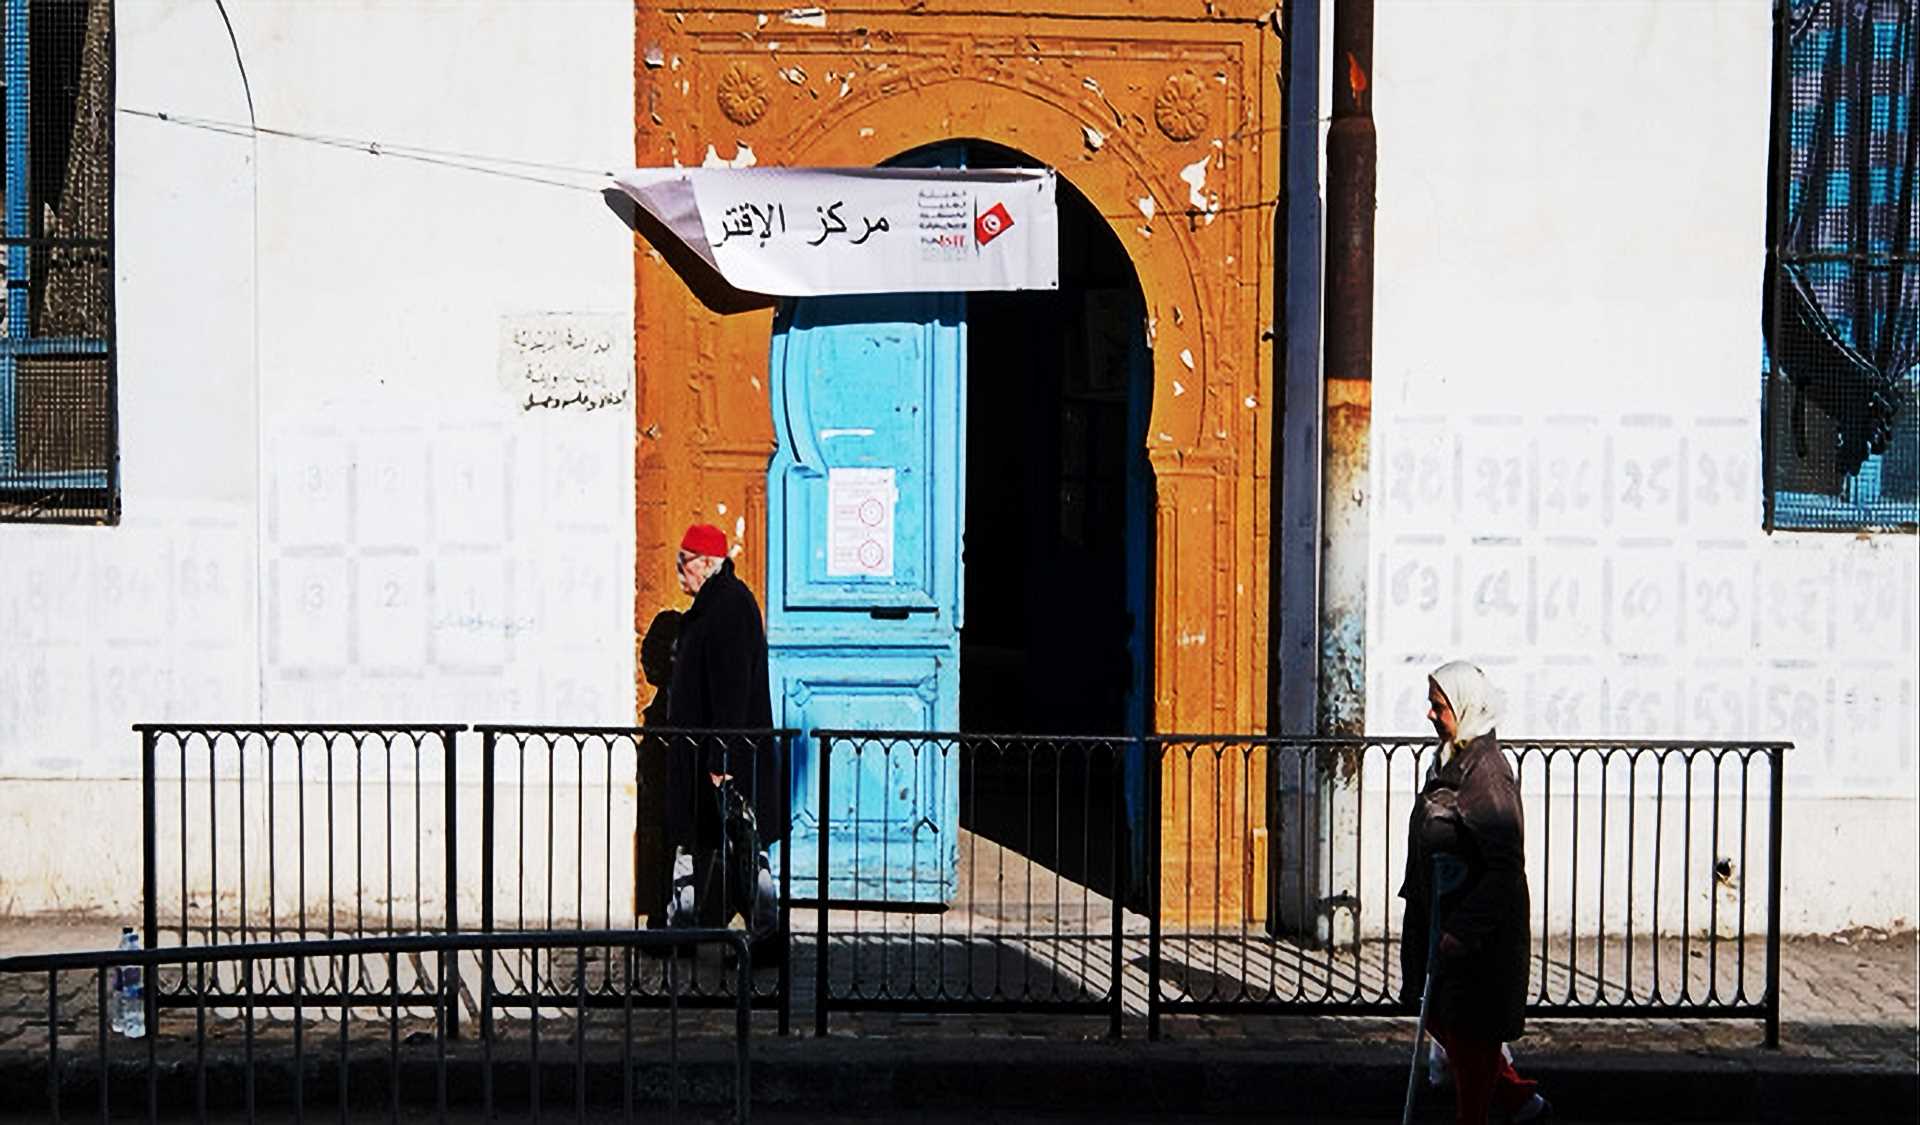 التونسي يقاطع العملية الانتخابية في ظل موت السياسة في تونس